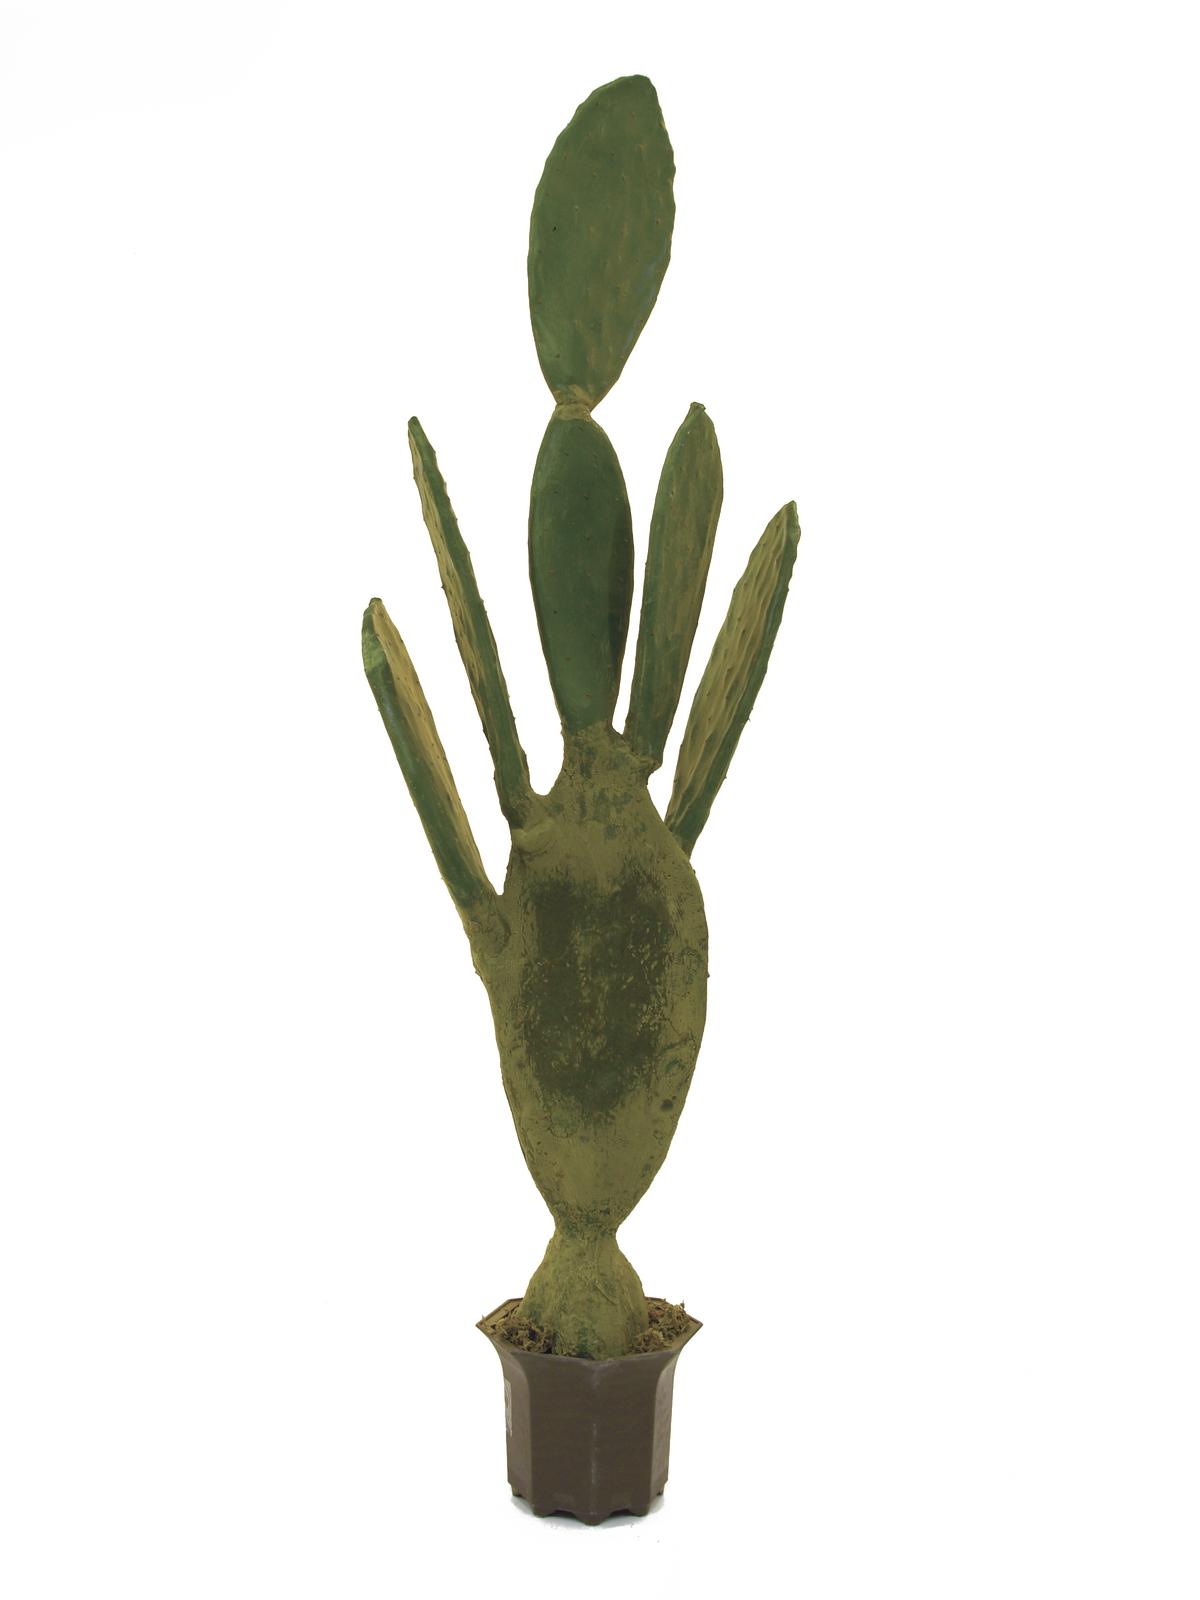 umělý kaktus jako živý